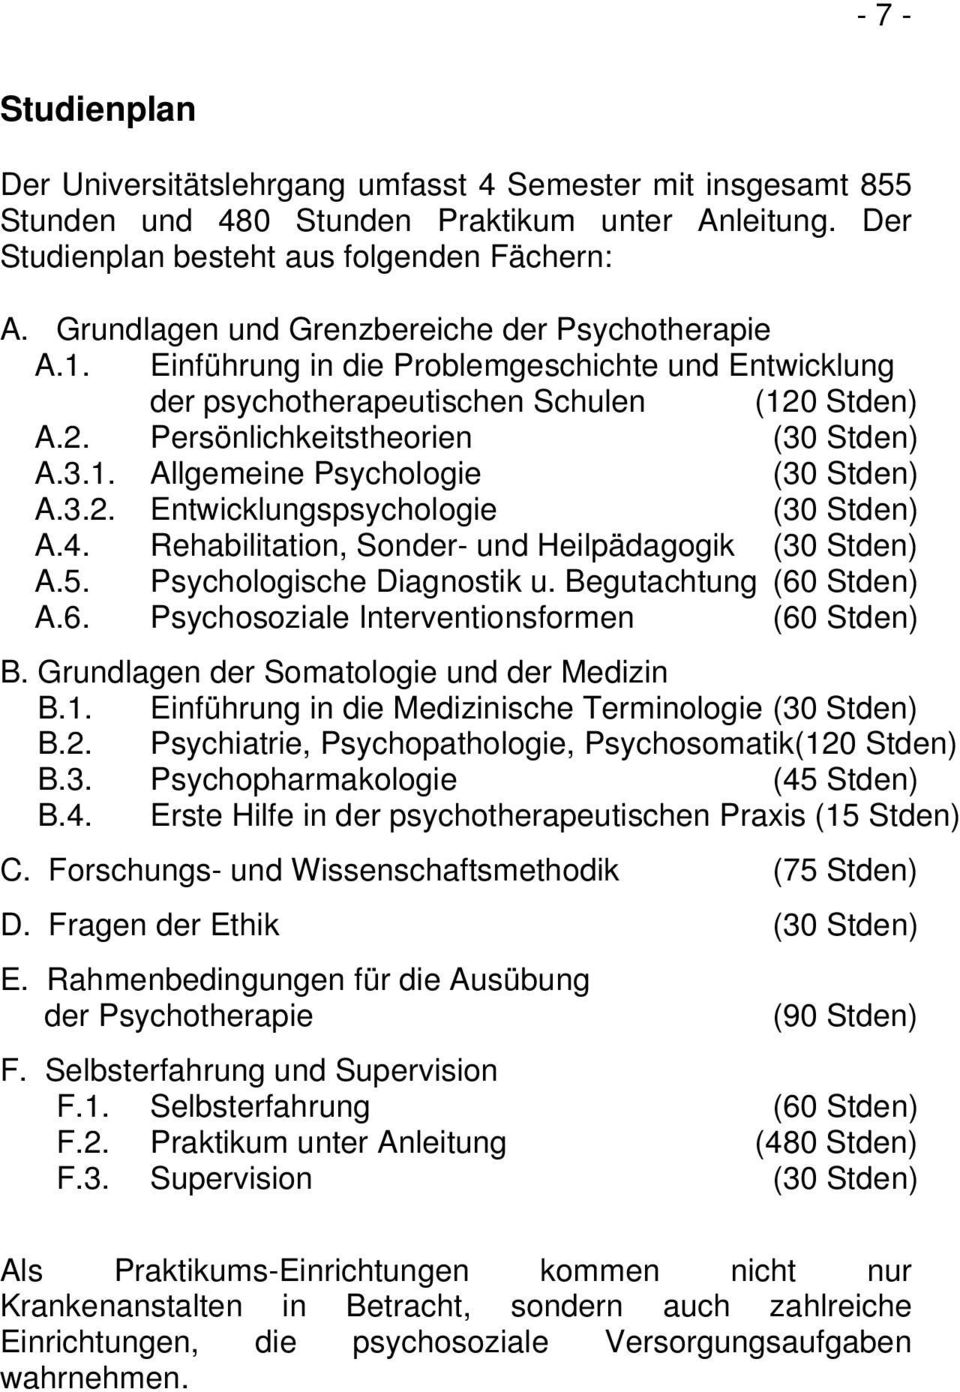 3.2. Entwicklungspsychologie (30 Stden) A.4. Rehabilitation, Sonder- und Heilpädagogik (30 Stden) A.5. Psychologische Diagnostik u. Begutachtung (60 Stden) A.6. Psychosoziale Interventionsformen (60 Stden) B.